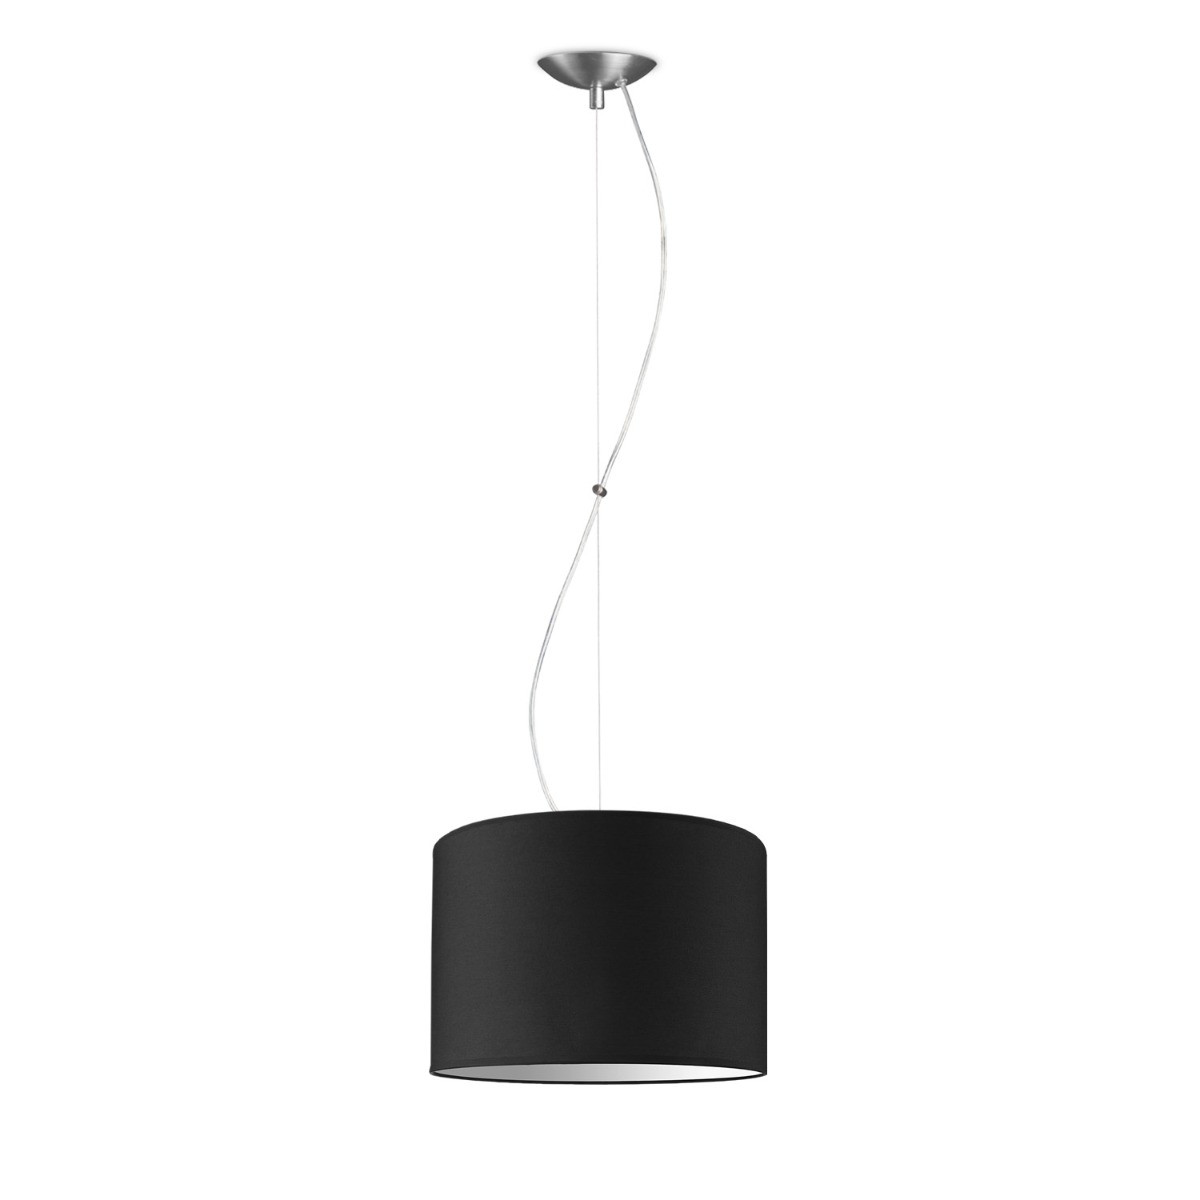 Light depot - hanglamp basic deluxe bling Ø 30 cm - zwart - Outlet